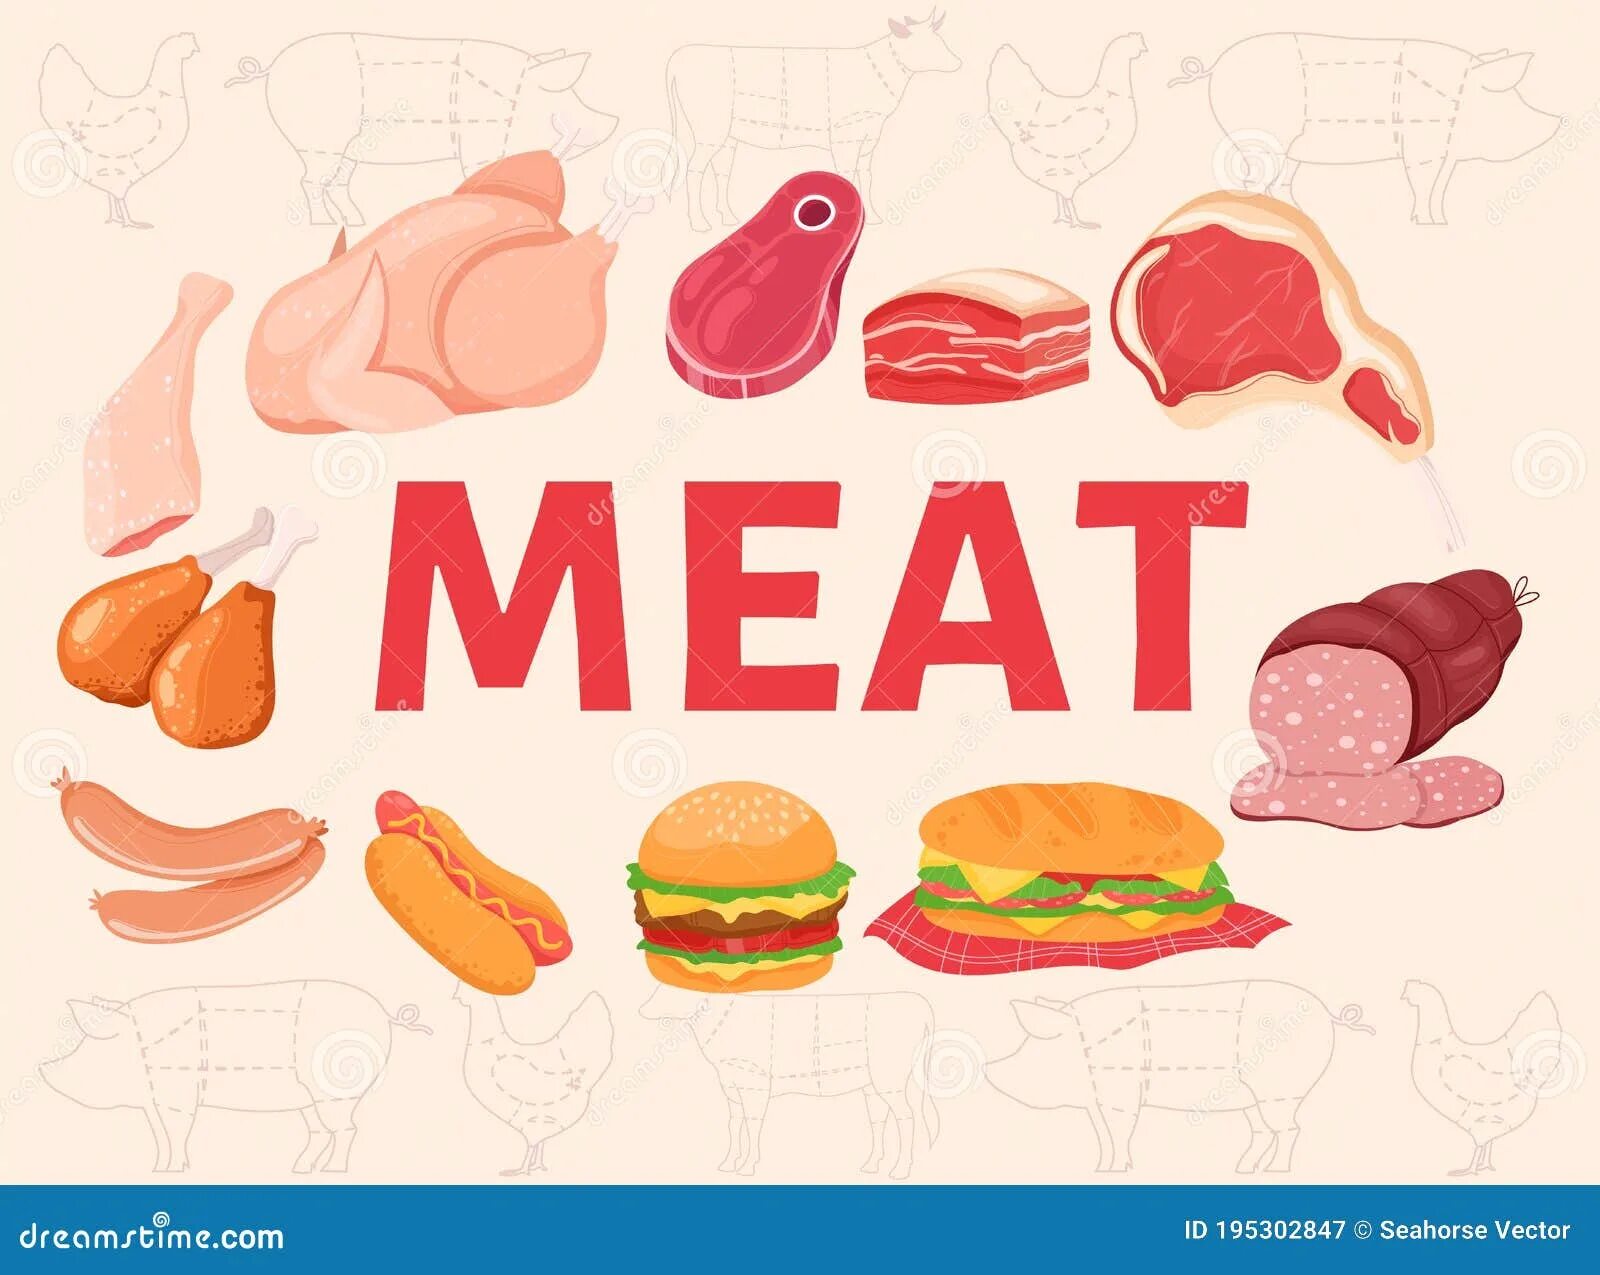 Meat слово. Мясо картинка и слово. Meat Words. Meat слово в картинке.